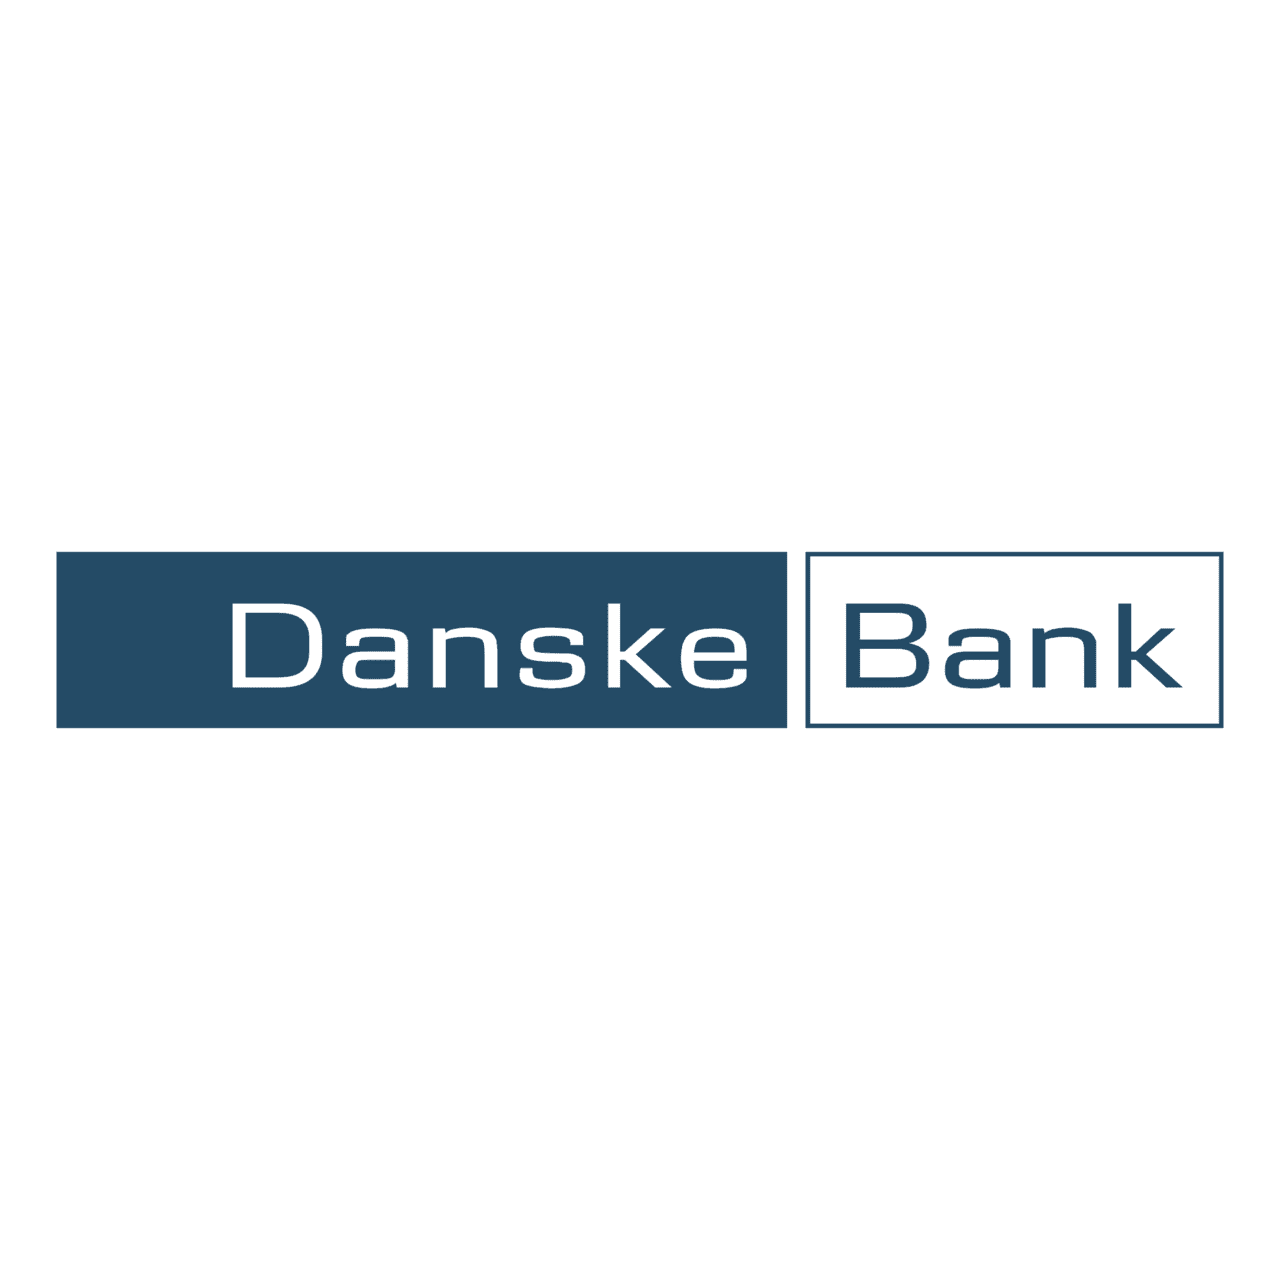 Danske Bank  Ø¢Ù† Ù„Ø§Ø¦Ù† Ú©ÛŒØ³ÛŒÙ†Ùˆ Ø¢Ù† Ù„Ø§Ø¦Ù† Ú©ÛŒØ³ÛŒÙ†Ùˆ